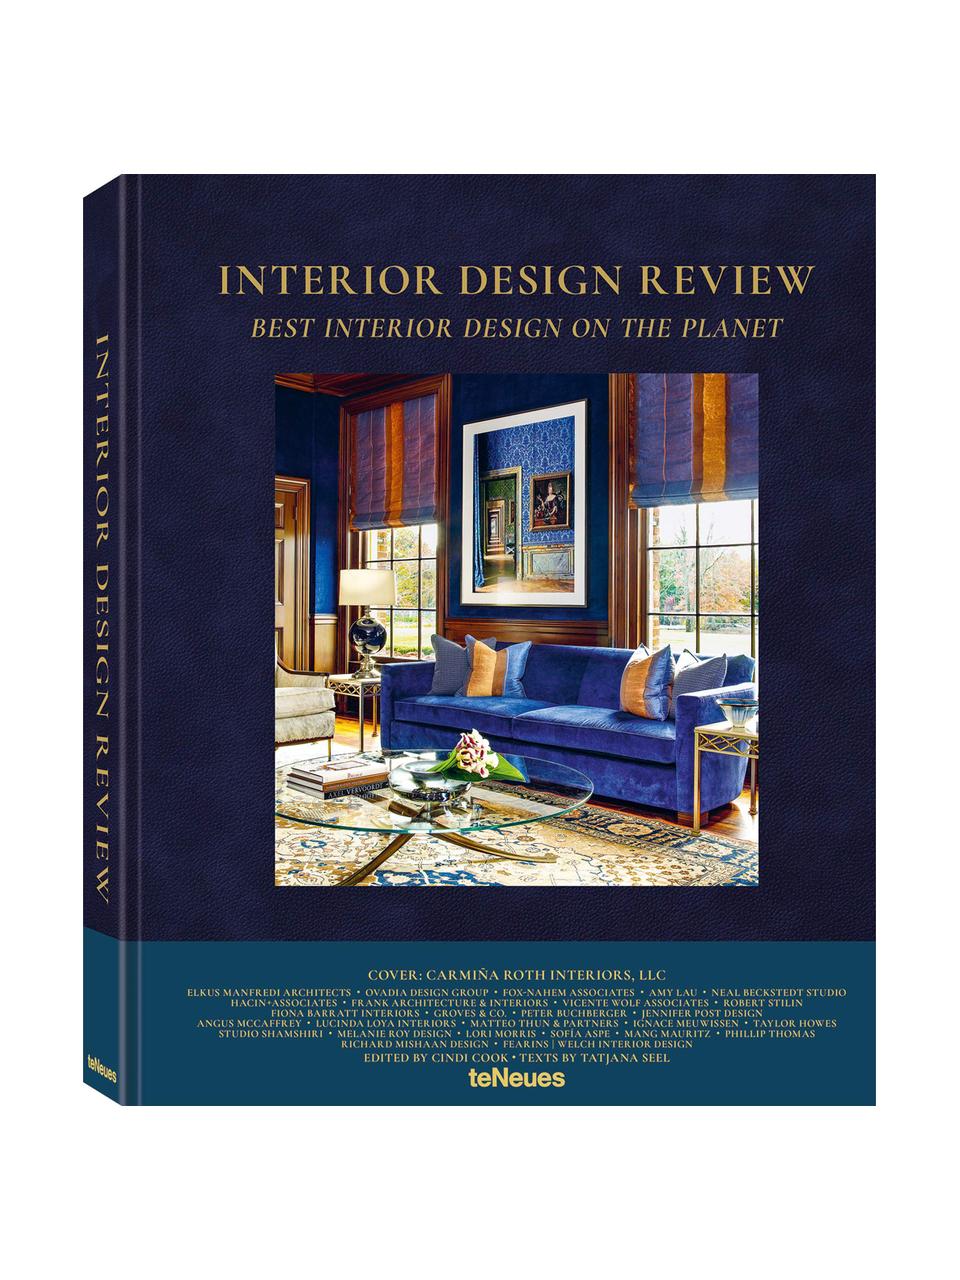 Libro illustrato Interior Design Review, Carta, copertina rigida, Multicolore, Lung. 32 x Larg. 25 cm